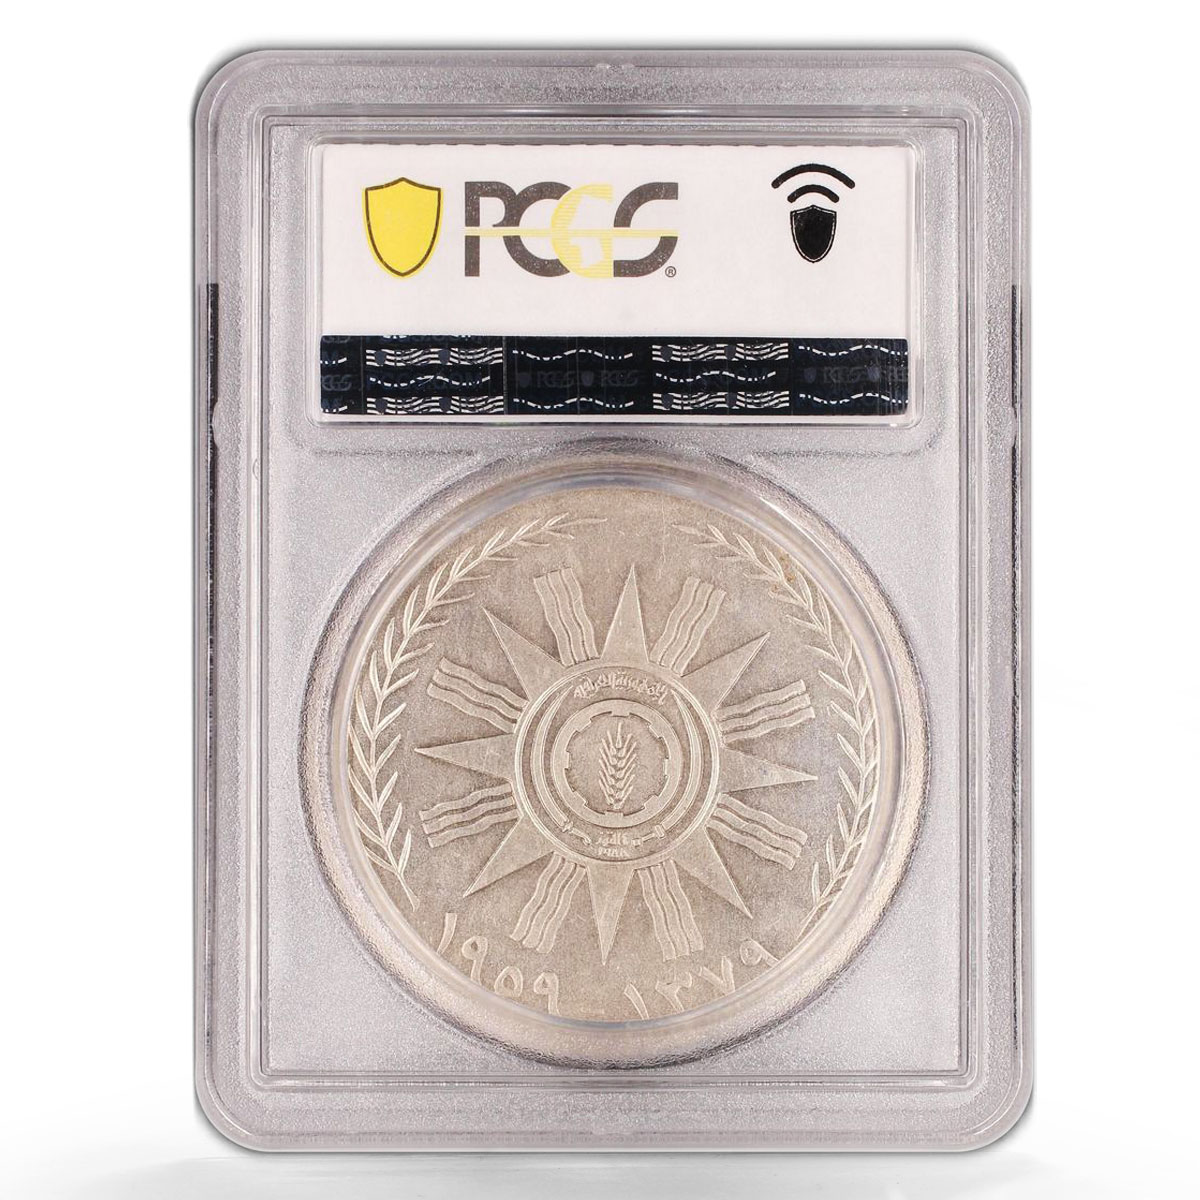 Iraq 500 fils 1st Republic Anniversary General Kassem MS63 PCGS silver coin 1959